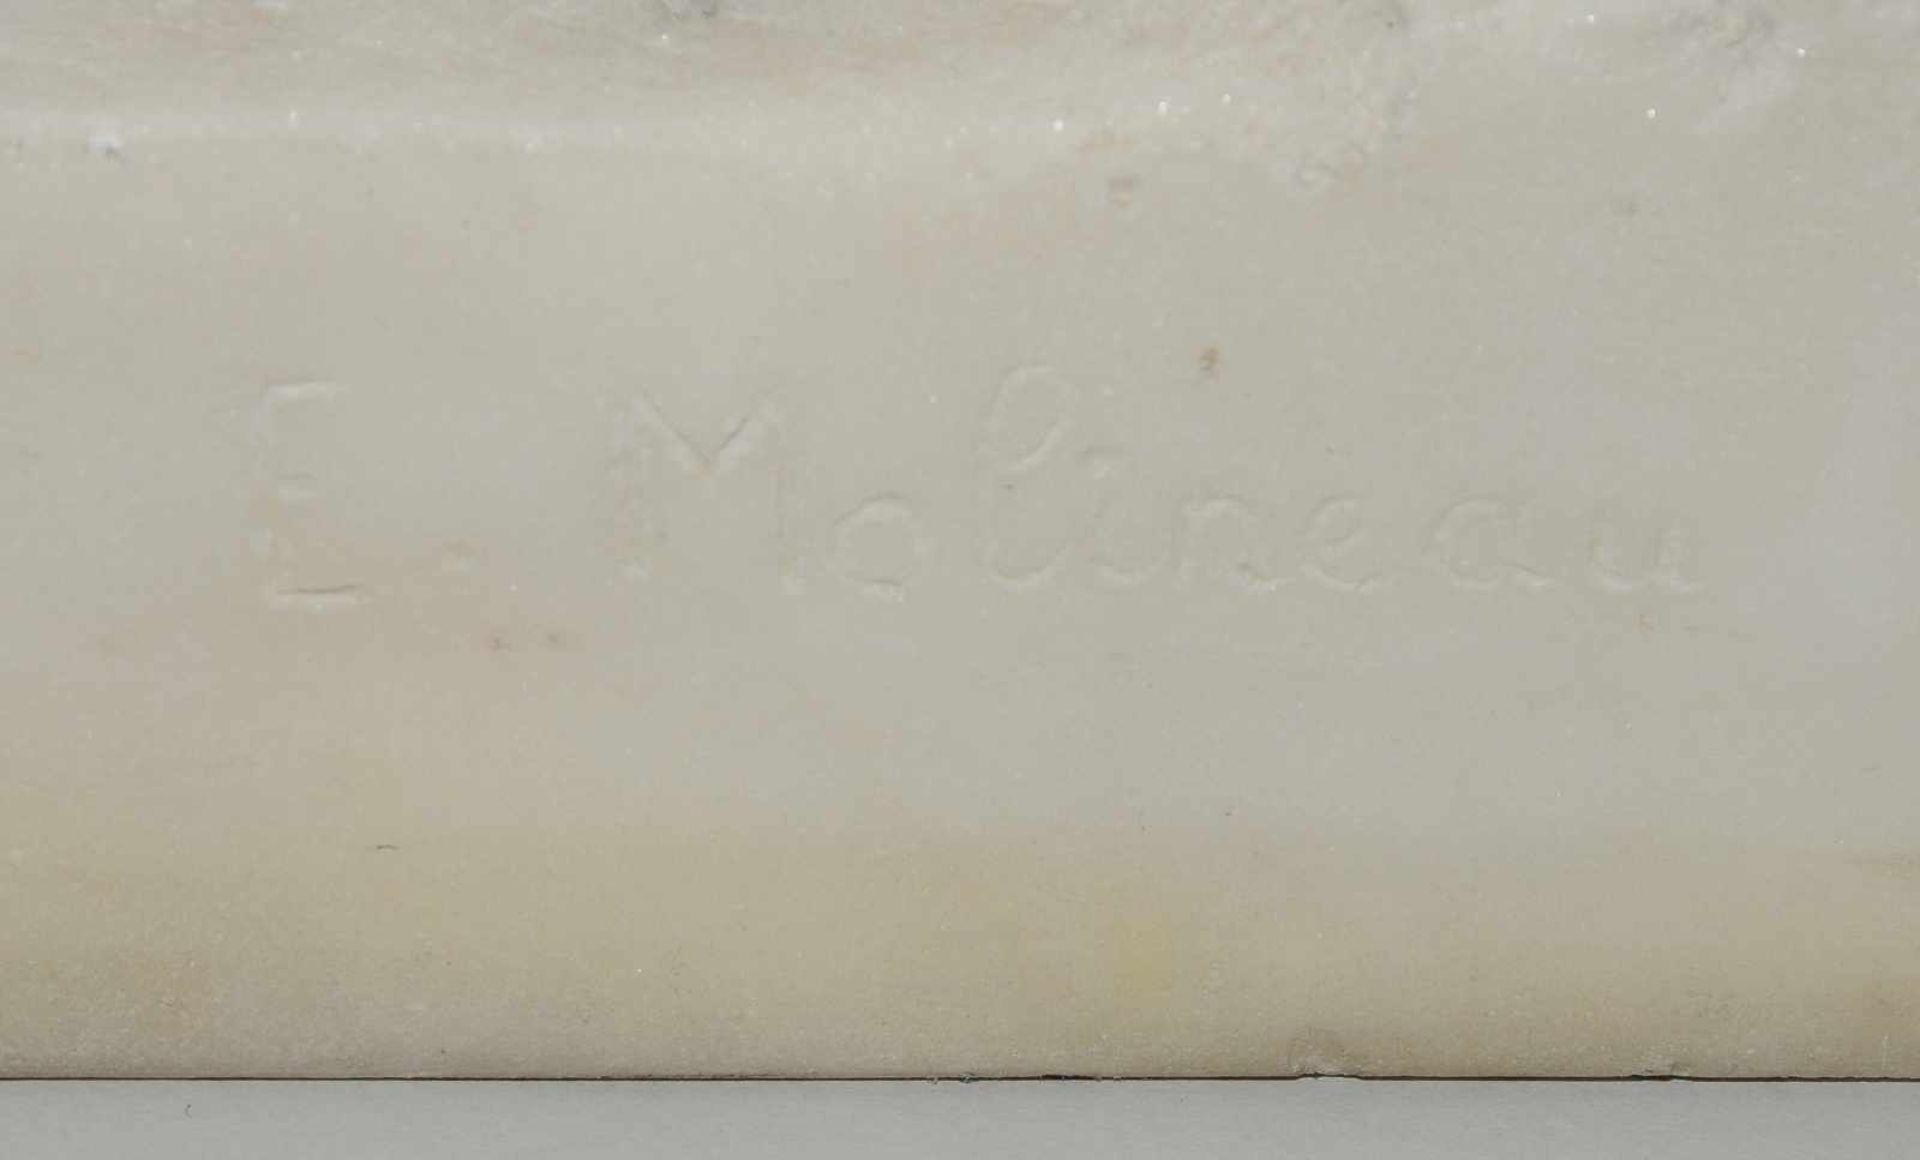 Mädchenakt, E. Molineau Um 1900. Mädchenakt. Weisser Marmor. Bezeichnet: E. Molineau. H 74 cm. - Bild 9 aus 9